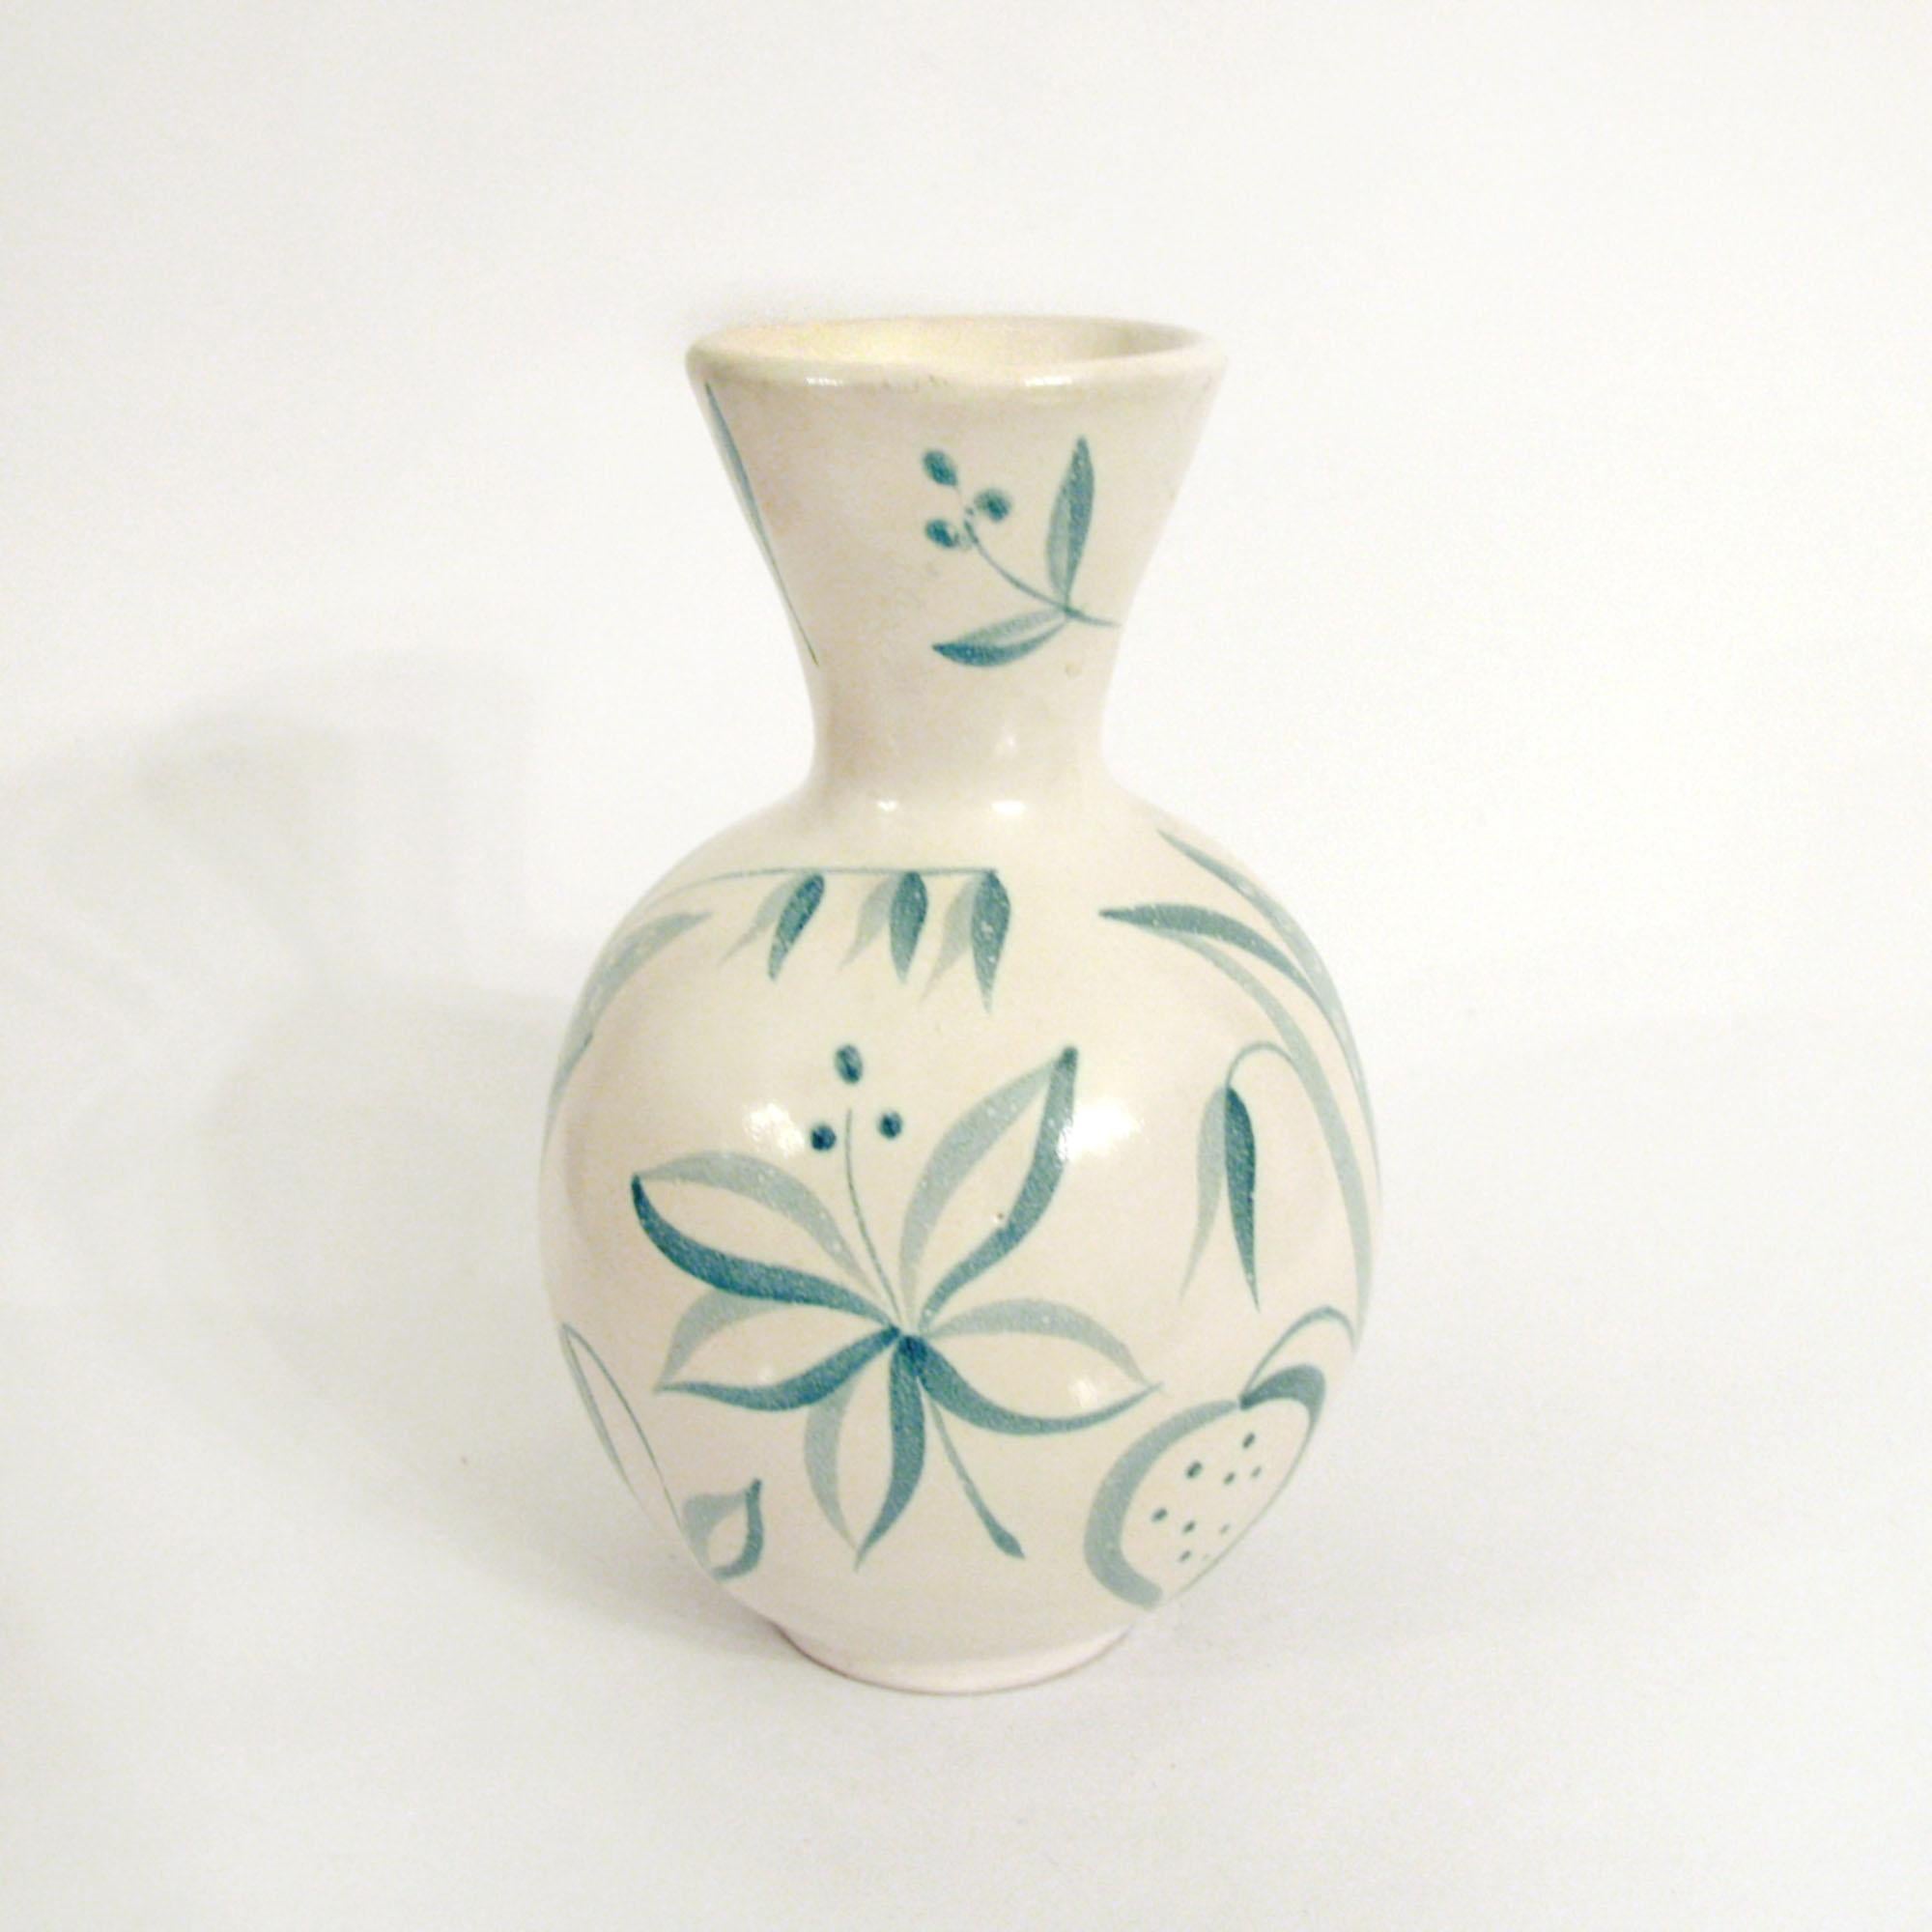 Un joli vase décoratif en céramique conçu par Anna-Lisa Thomson dans les années 1940 pour Ekeby, Suède. Modèle 'Flora', réalisé entre 1948-1950. Céramique émaillée, peinte à la main, forme numéro 246. Marqué sous le fond.
Excellent